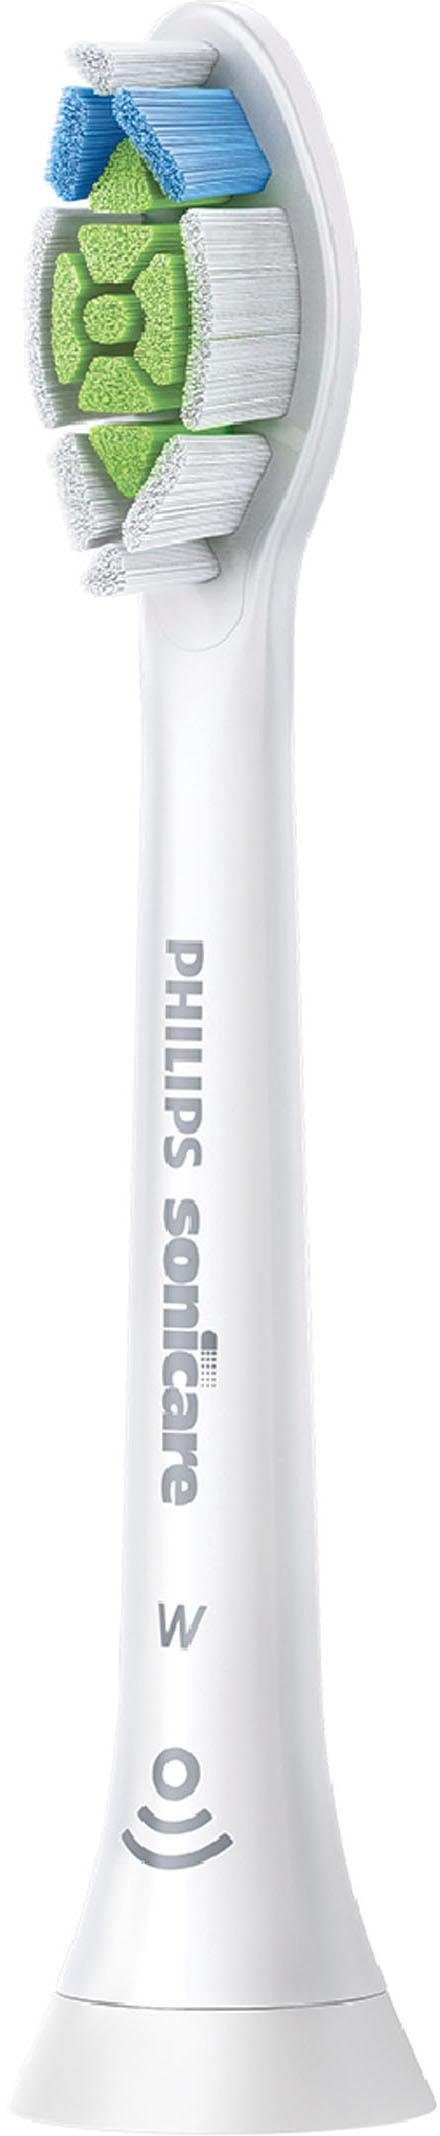 Philips Sonicare Elektrische Zahnbürste ProtectiveClean 5100,  Aufsteckbürsten: 1 St., Schallzahnbürste, Drucksensor, 3 Programme, Bis zu  7x mehr Plaqueentfernung im Vergleich zur Handzahnbürste